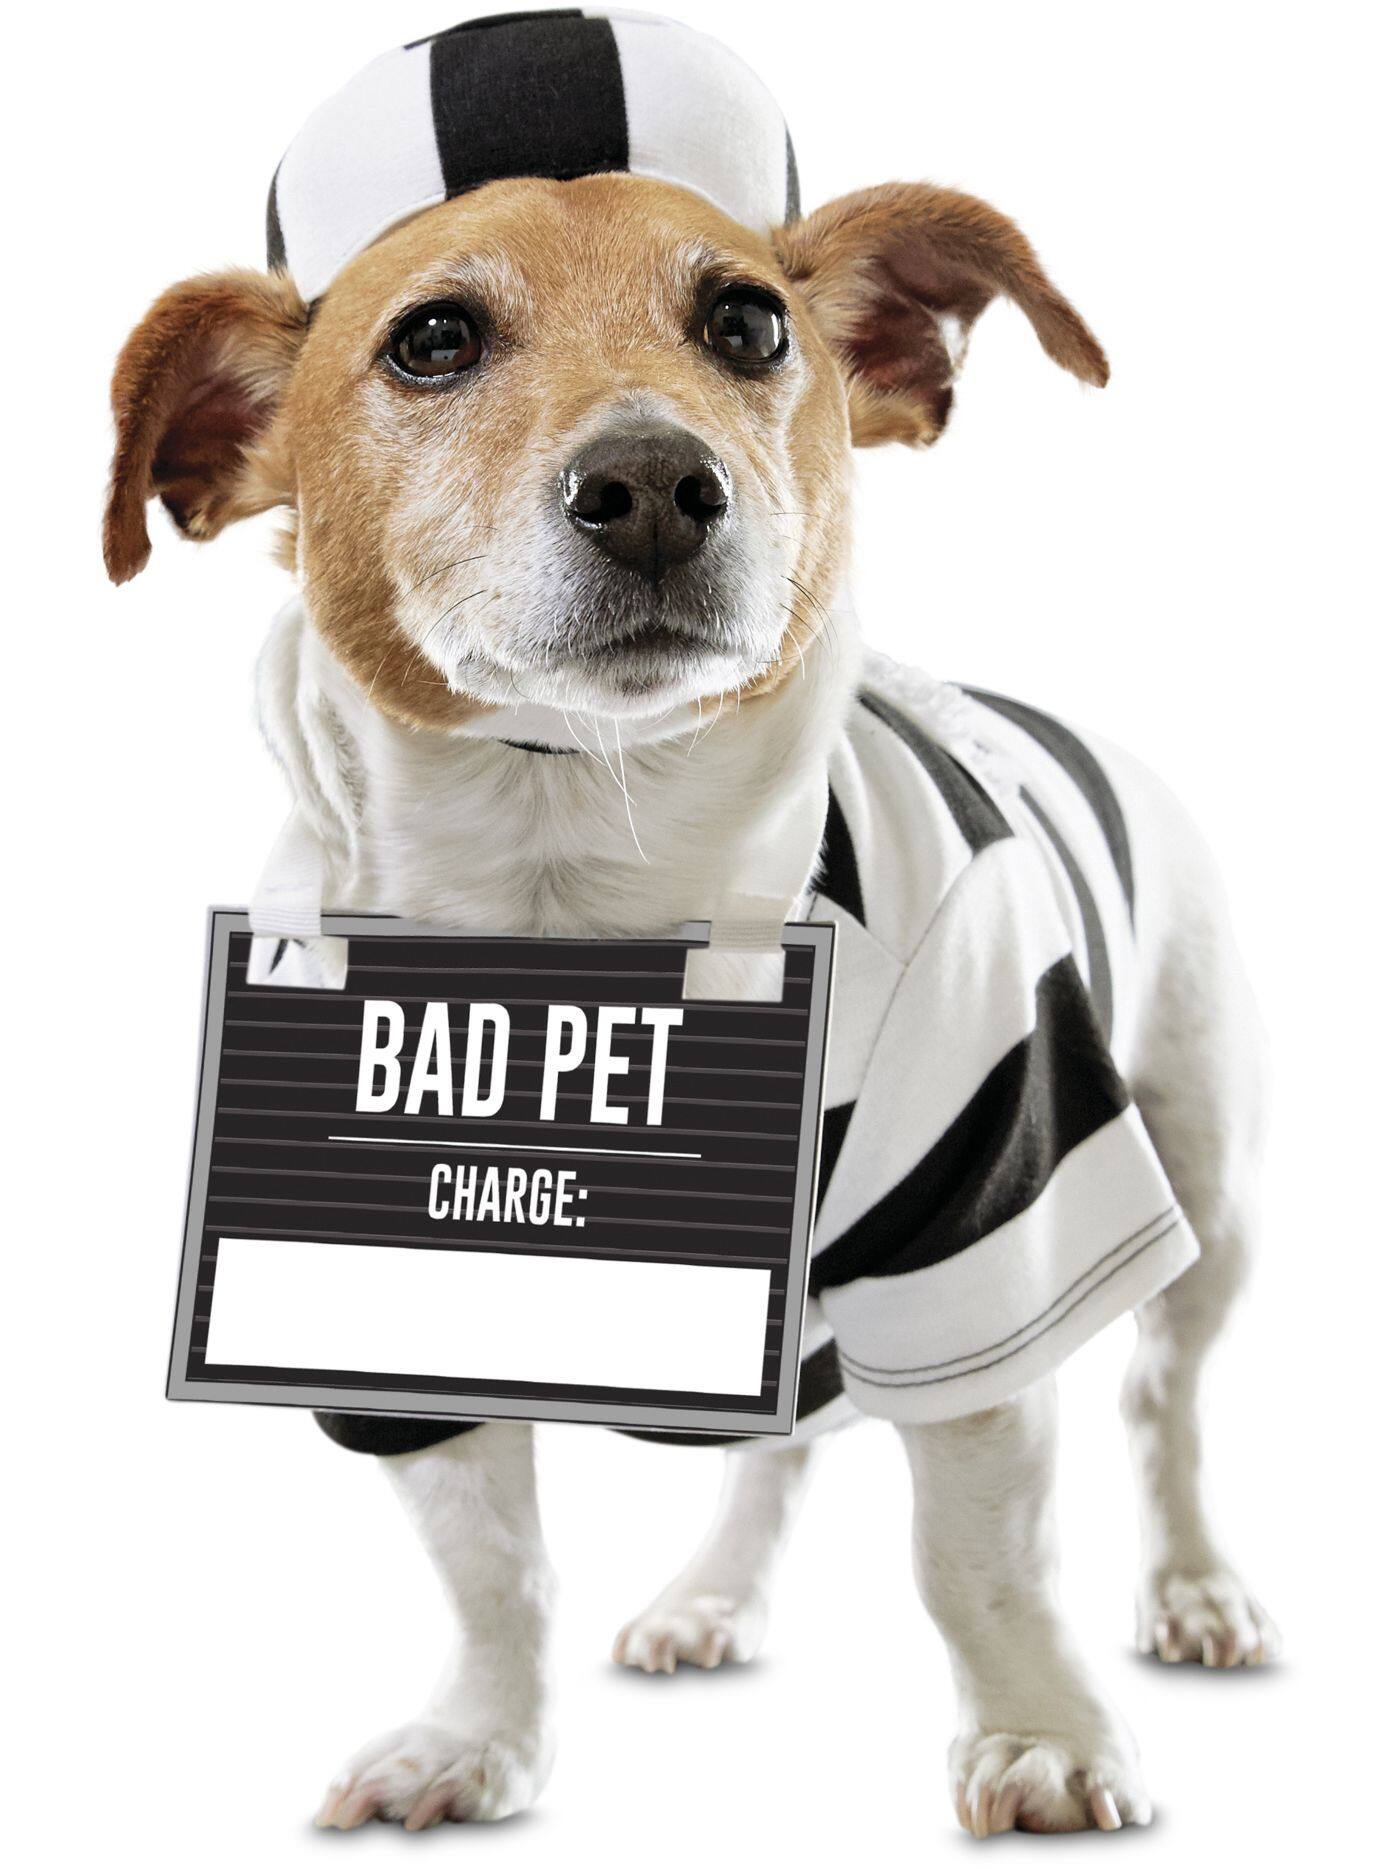 Bootique Prisoner Dog Costume